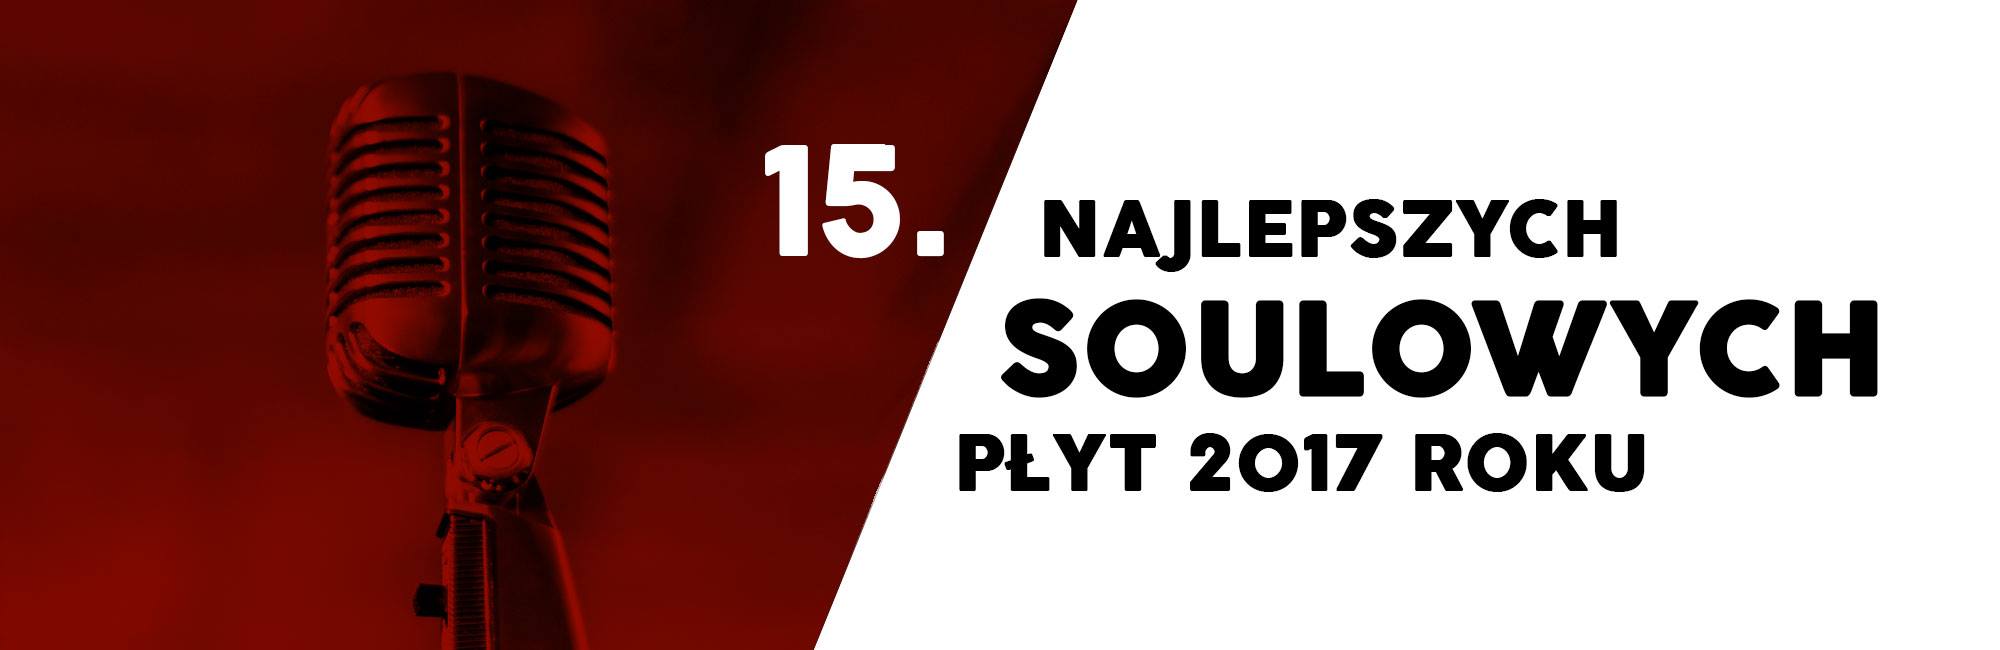 15. najlepszych soulowych płyt 2017 roku